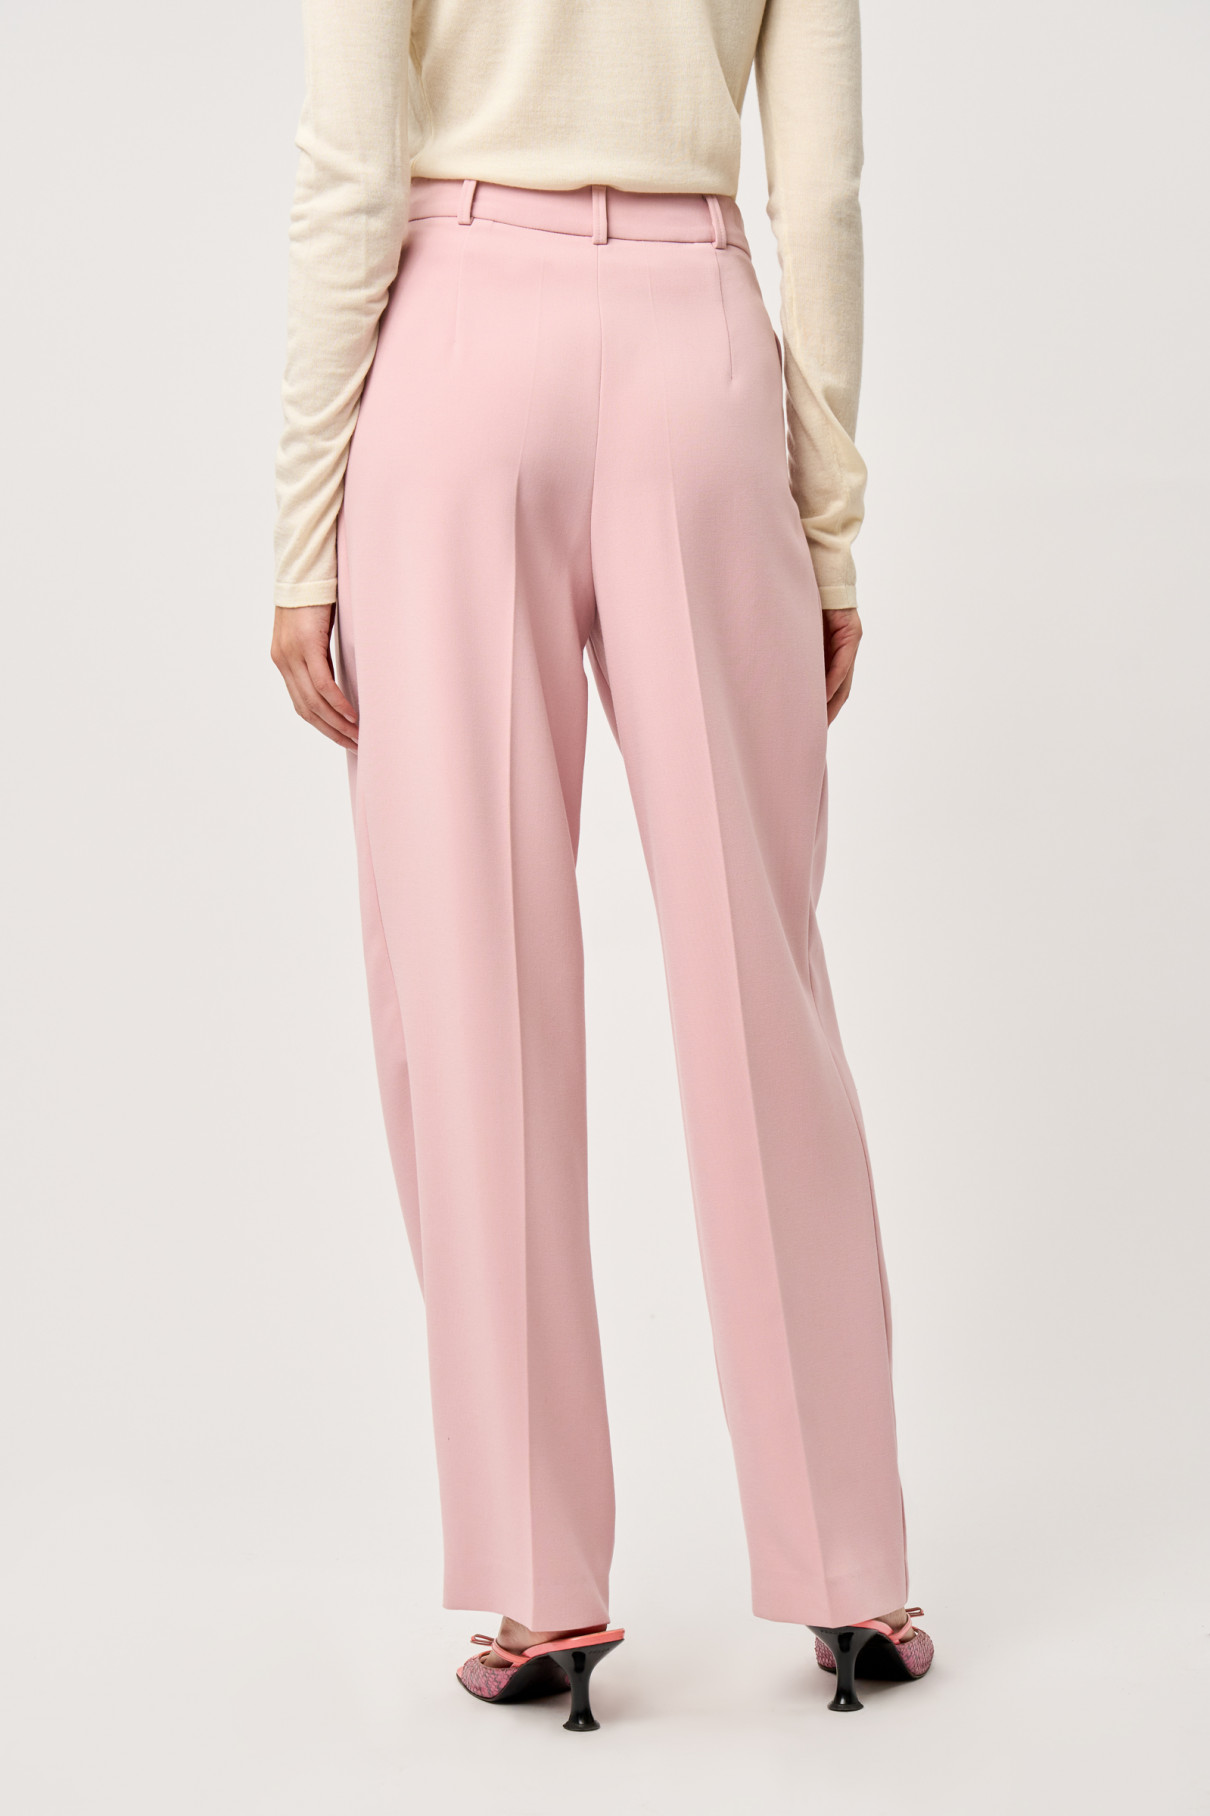 Прямые брюки со складками Розовый , арт. FR2204FWPINK купить в интернет-магазине